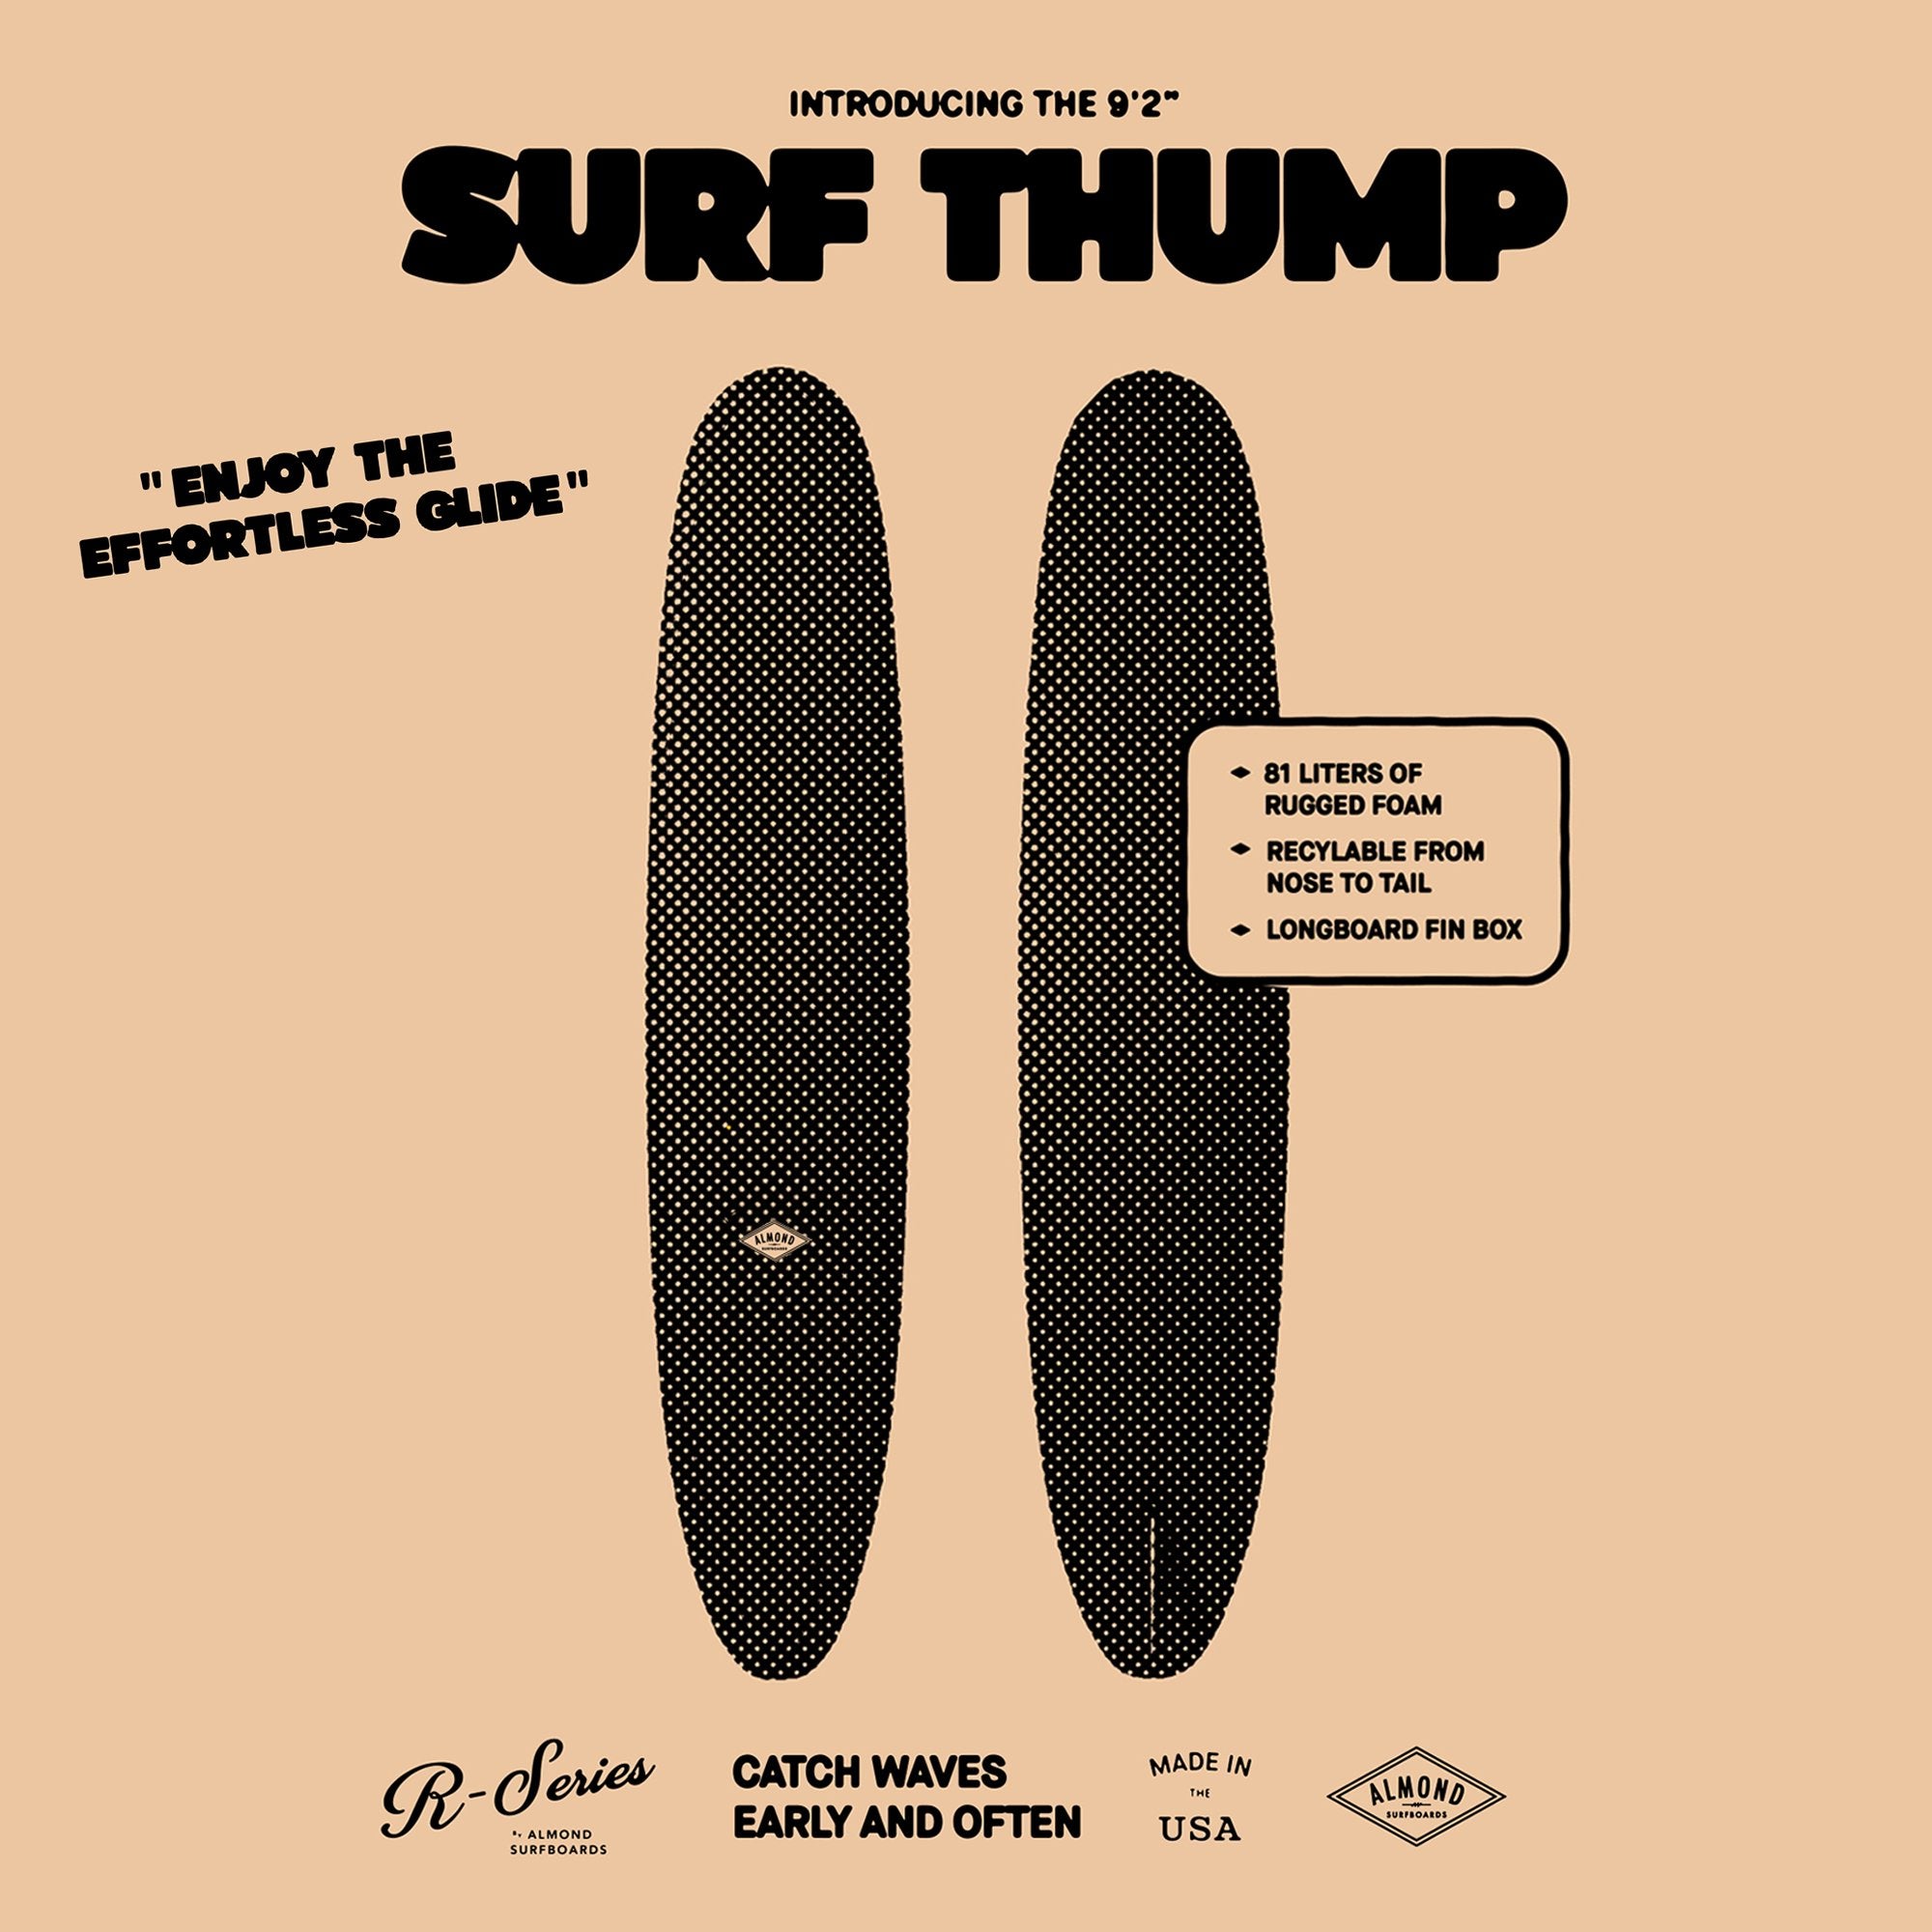 9'2 R-Series | Surf Thump